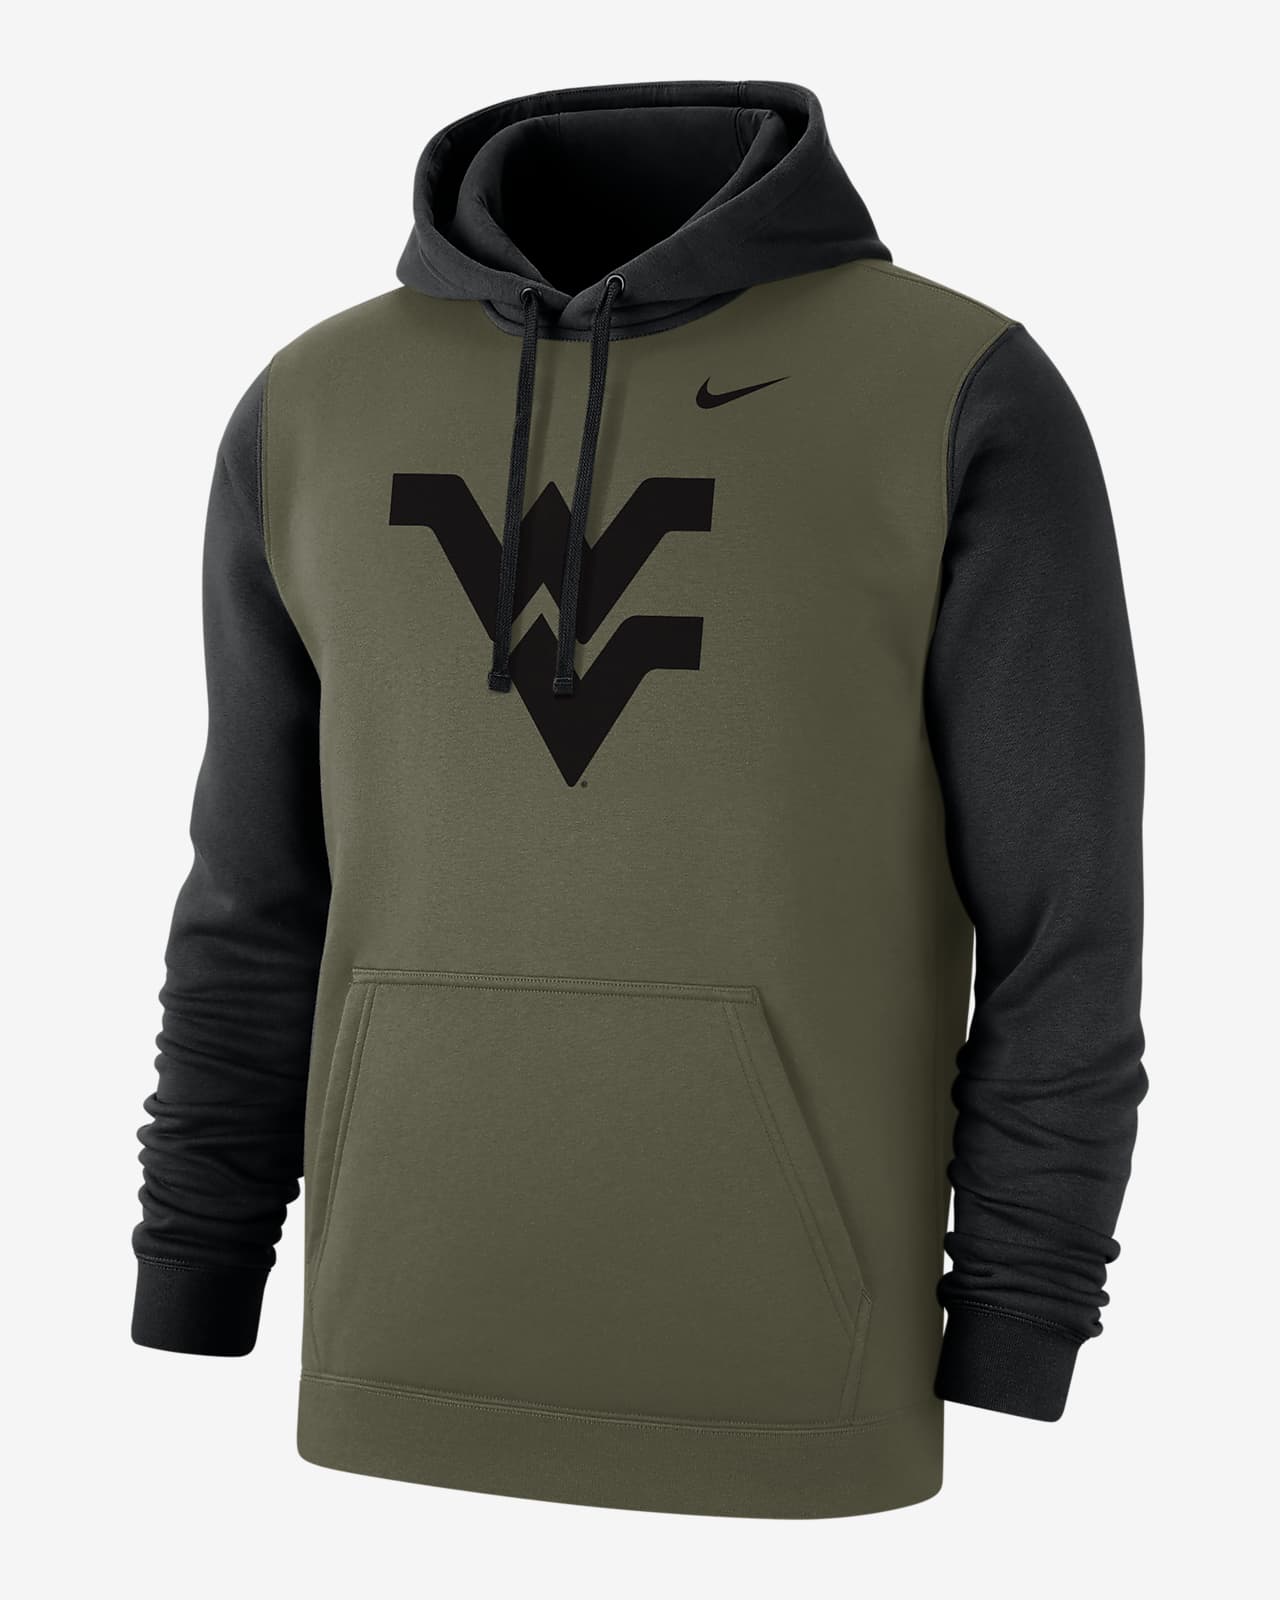 West Virginia Olive Pack Men's Nike College Hoodie